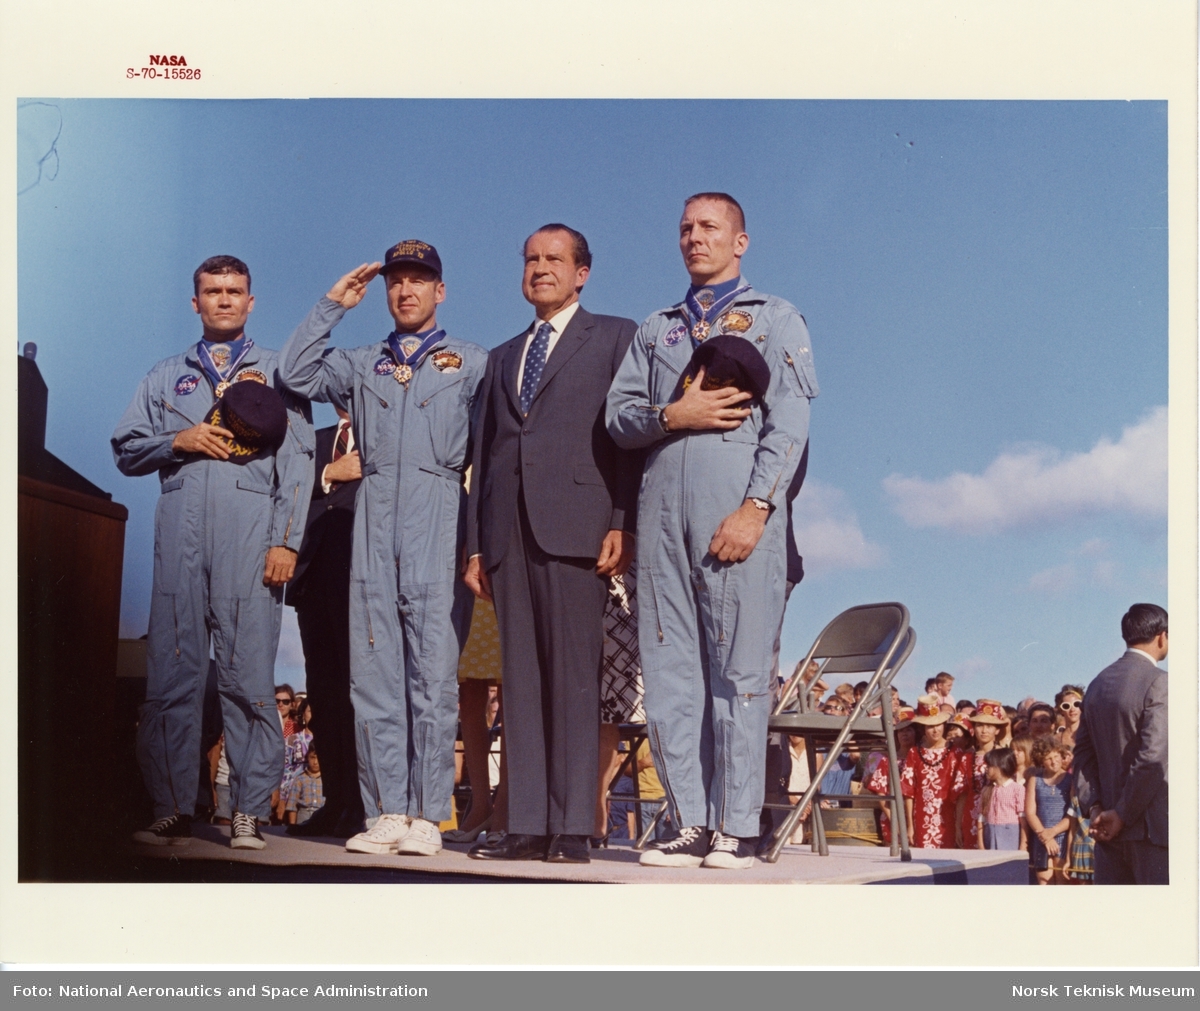 Astronautene Fred W. Haise, James A. Lovell og John L. Swigert hilser det amerikanske flagget etter å ha mottatt the Presidential Medal of Freedom etter romferden med Apollo 13 av president Richard Nixon.